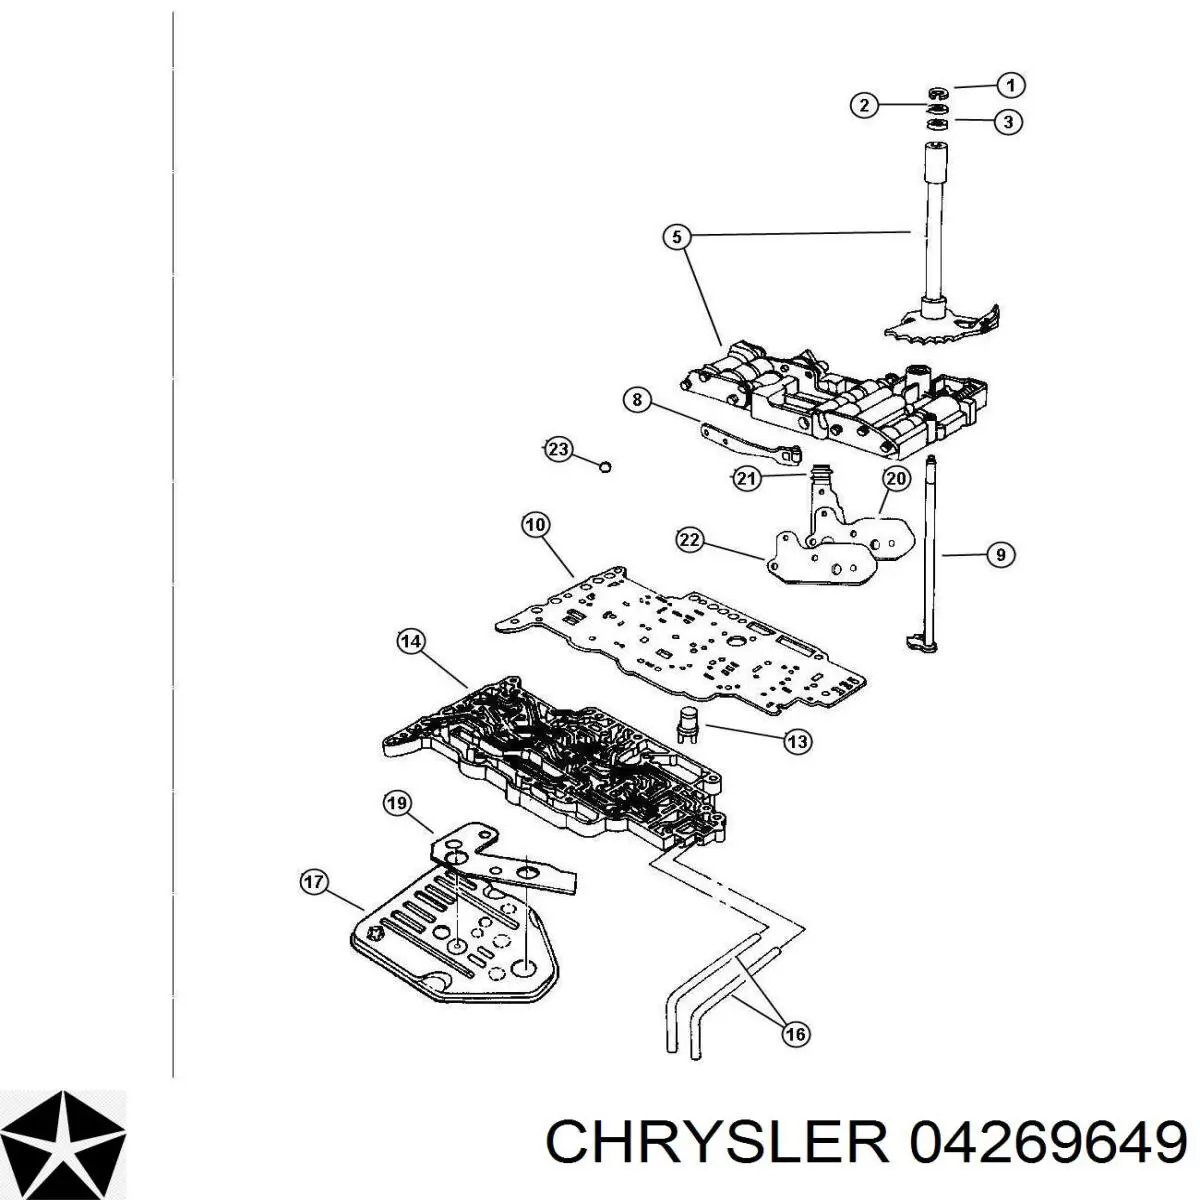 Фильтр АКПП на Chrysler Lebaron GTC 